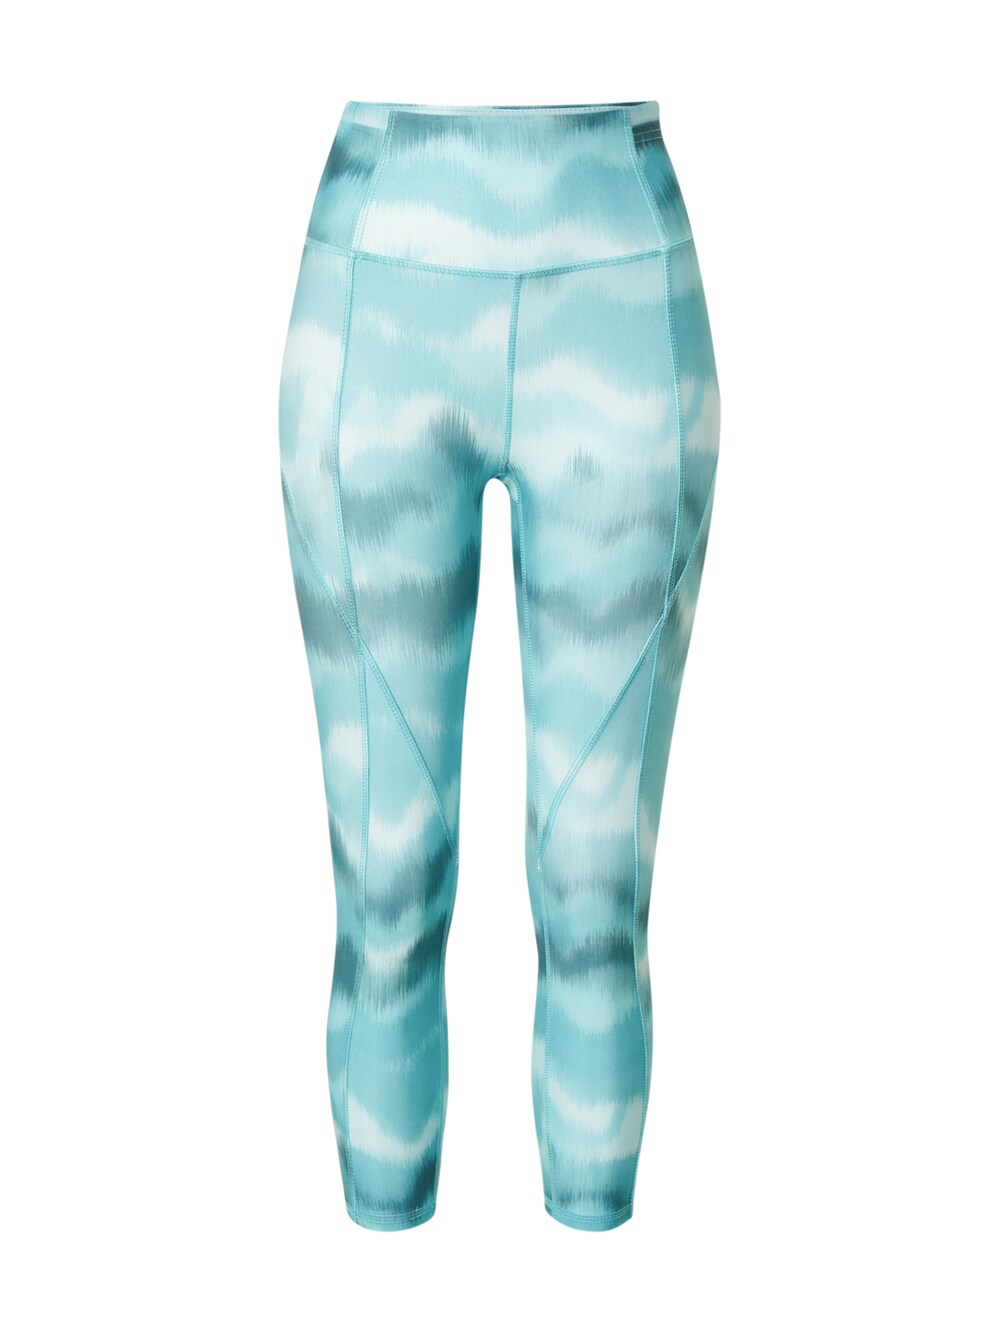 Узкие тренировочные брюки Marika TONY, лазурный/пастельно-синий/голубой